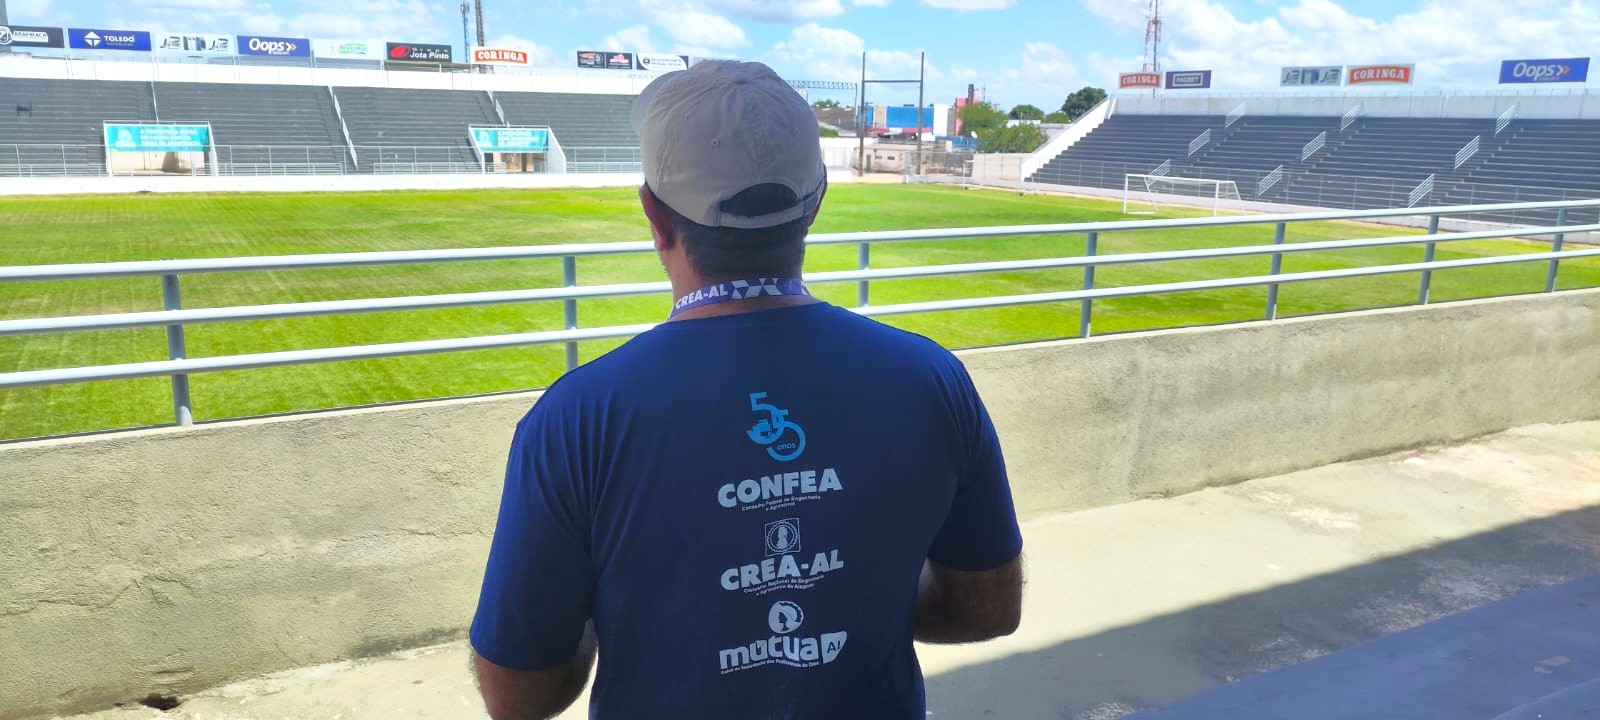 Crea-AL mobiliza força-tarefa de fiscalização em estádios de Alagoas